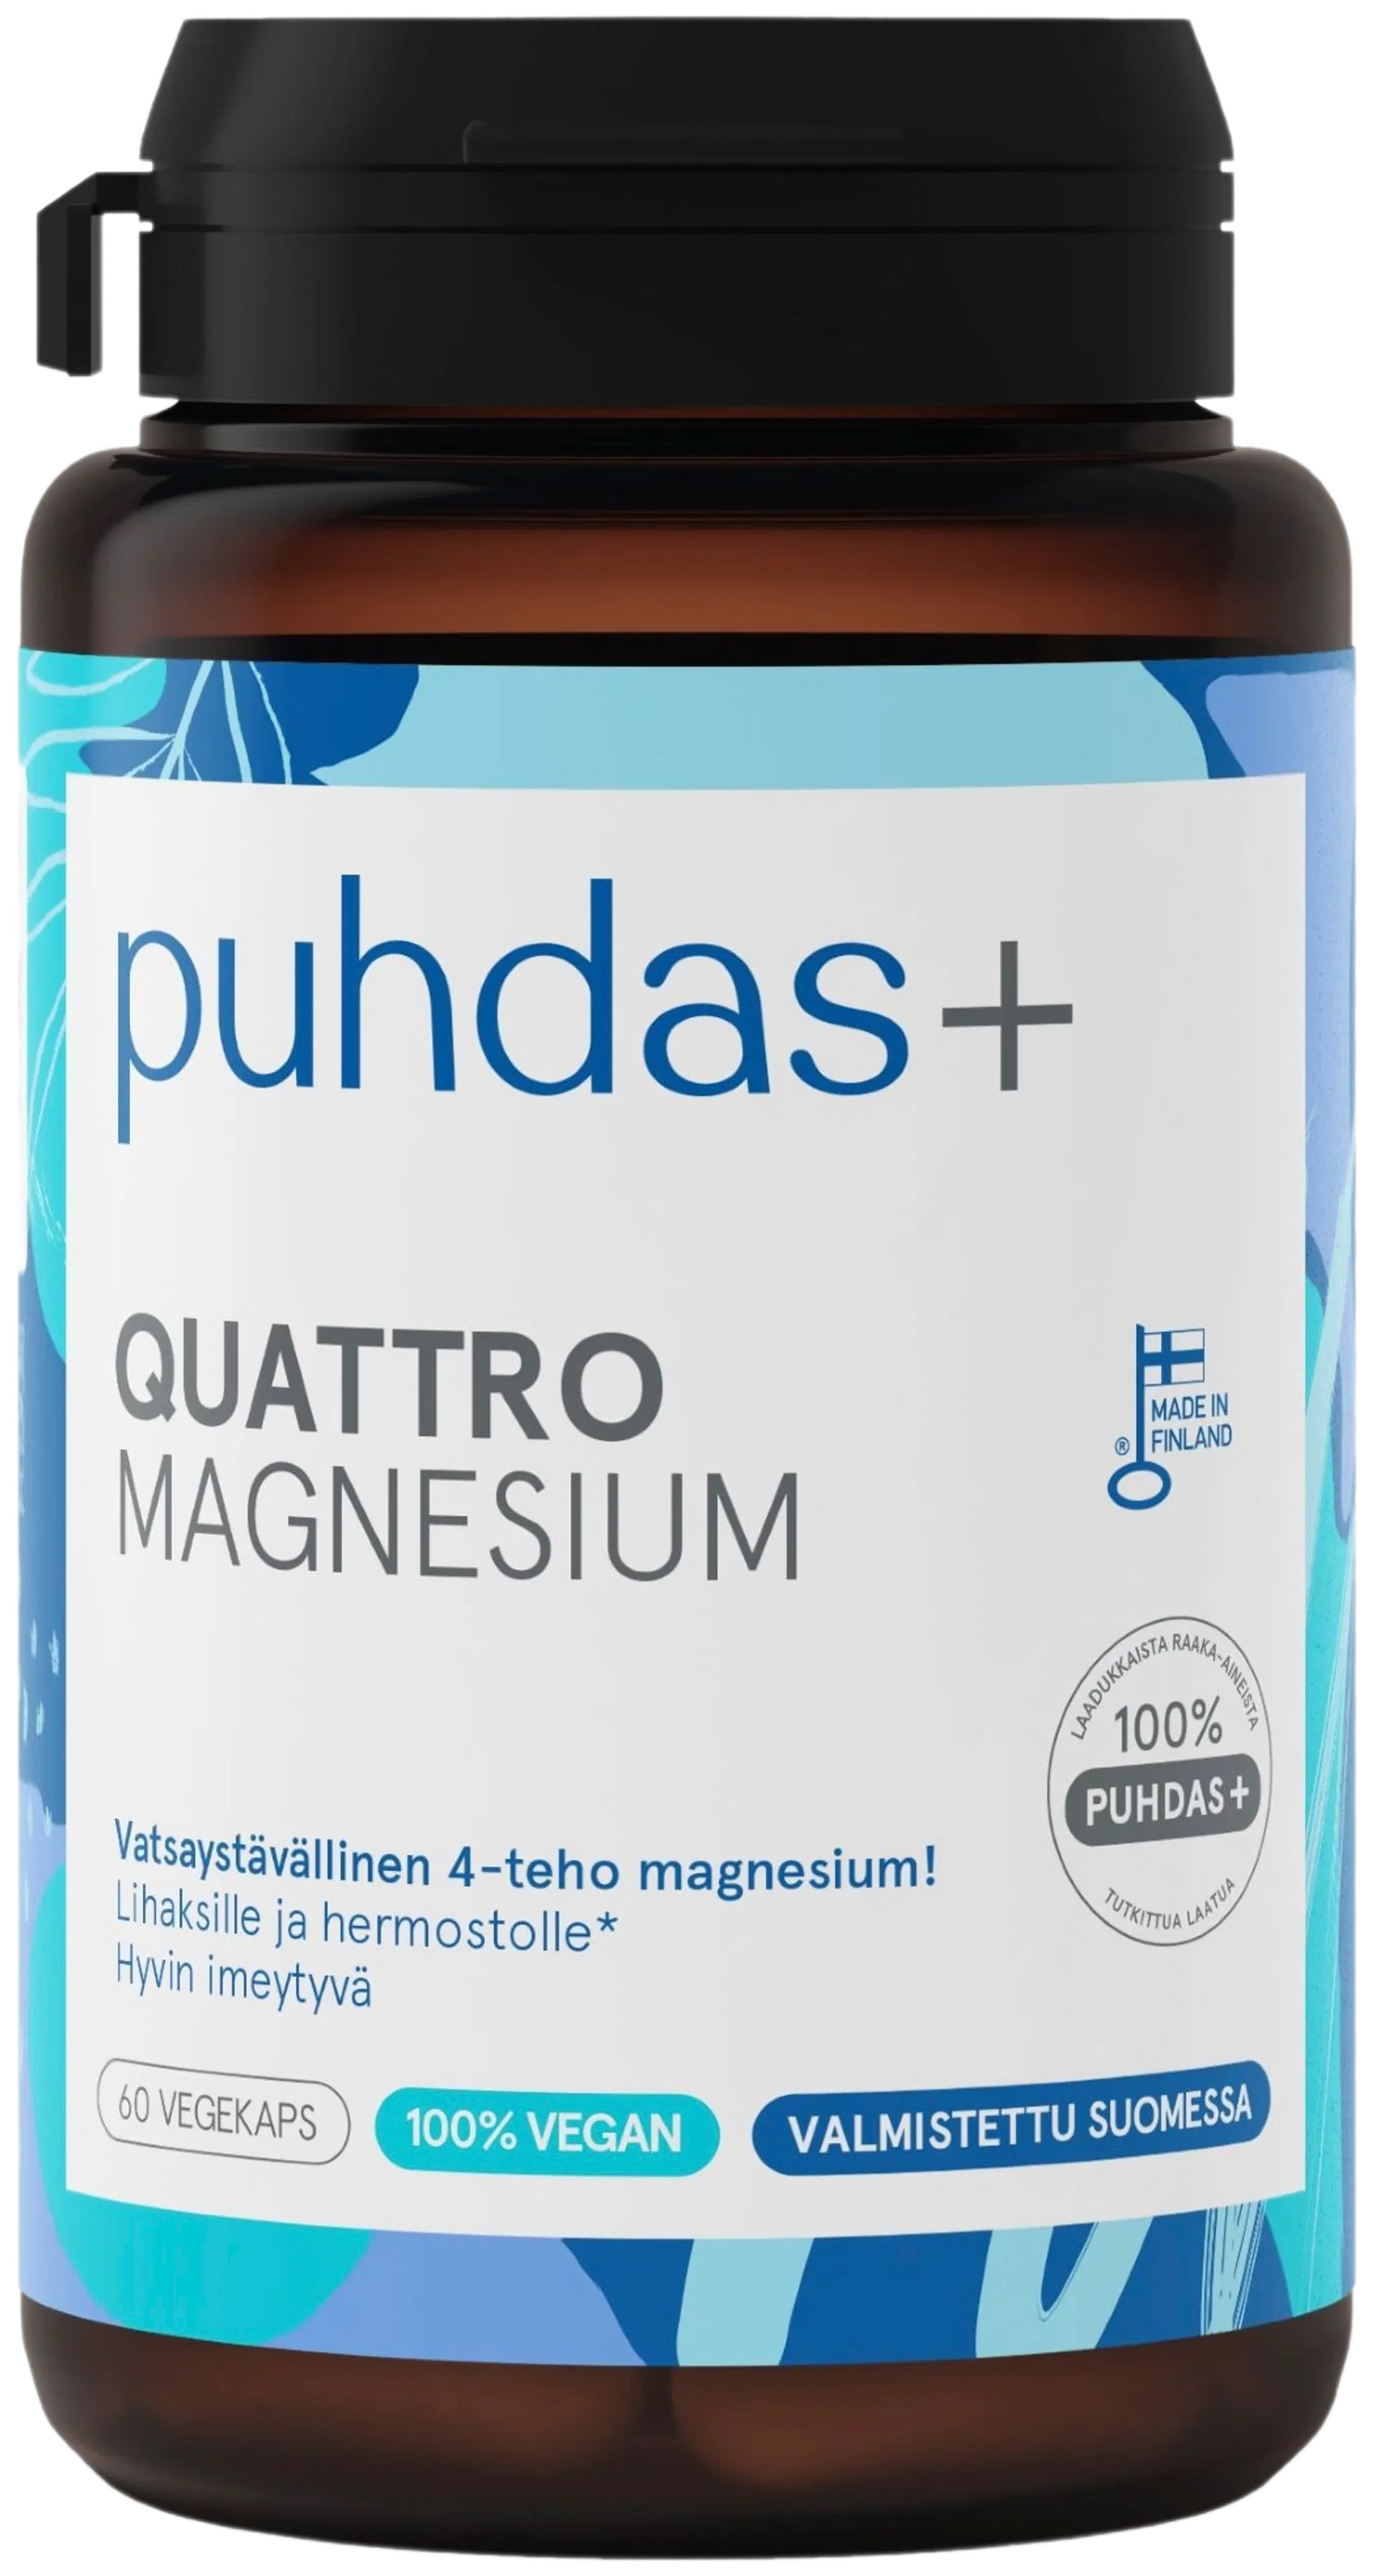 Puhdas+ Quattro Magnesiumvalmiste 36g/60kaps